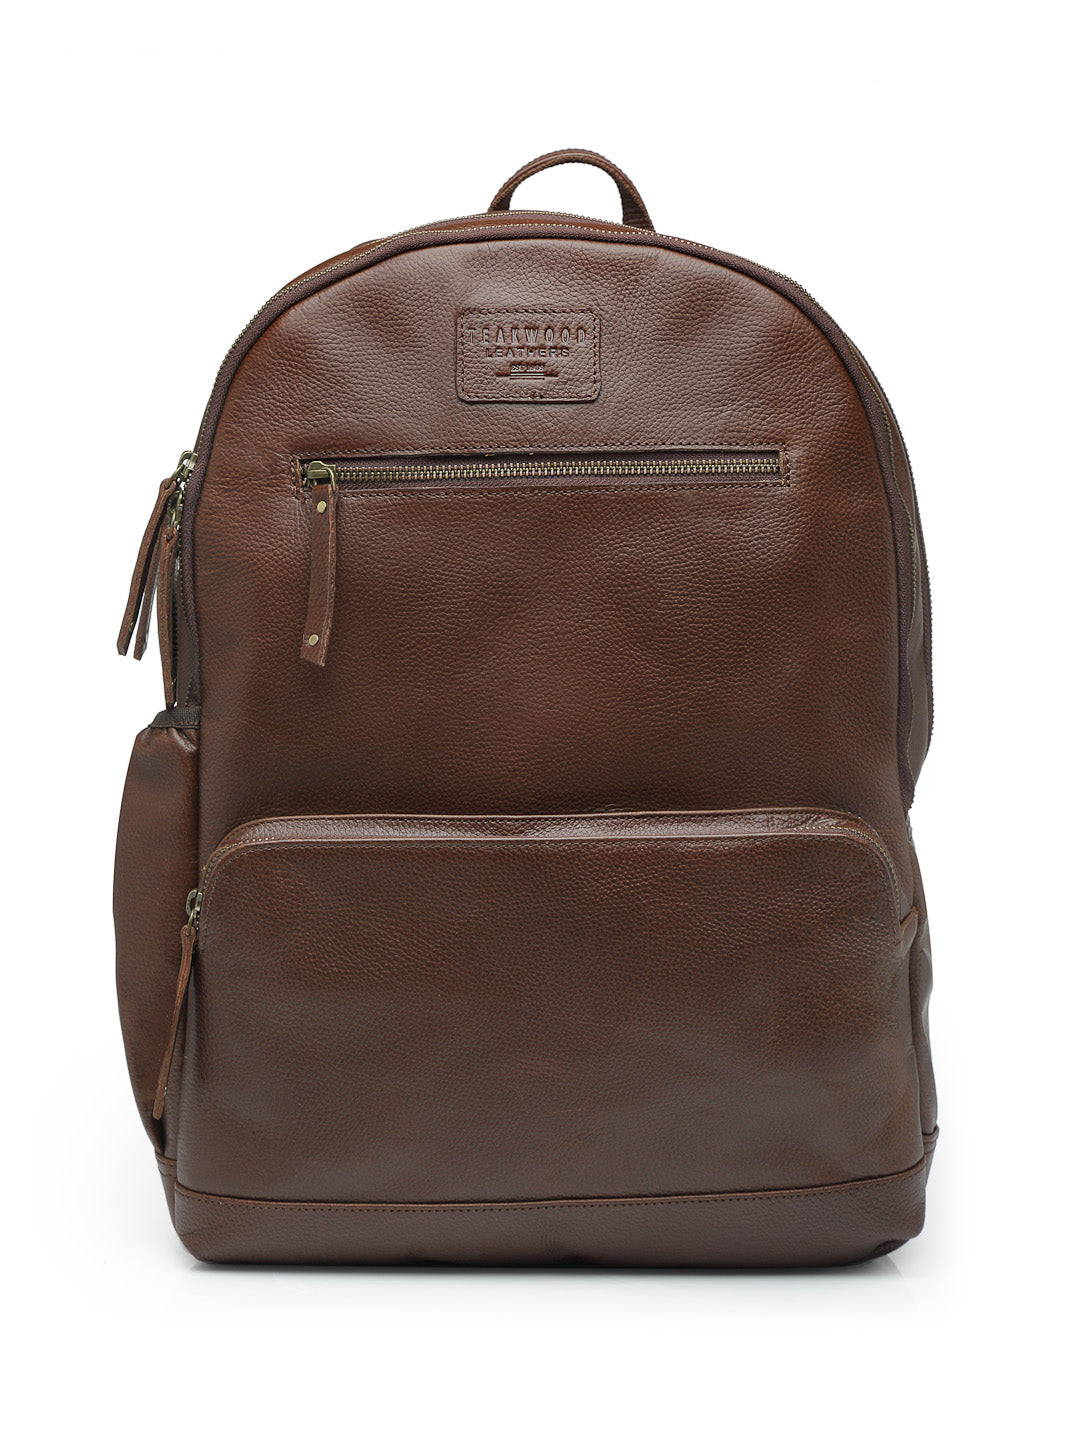 Personalized Large Leather Backpack, Travel Rucksack, Weekend Bag For –  LISABAG